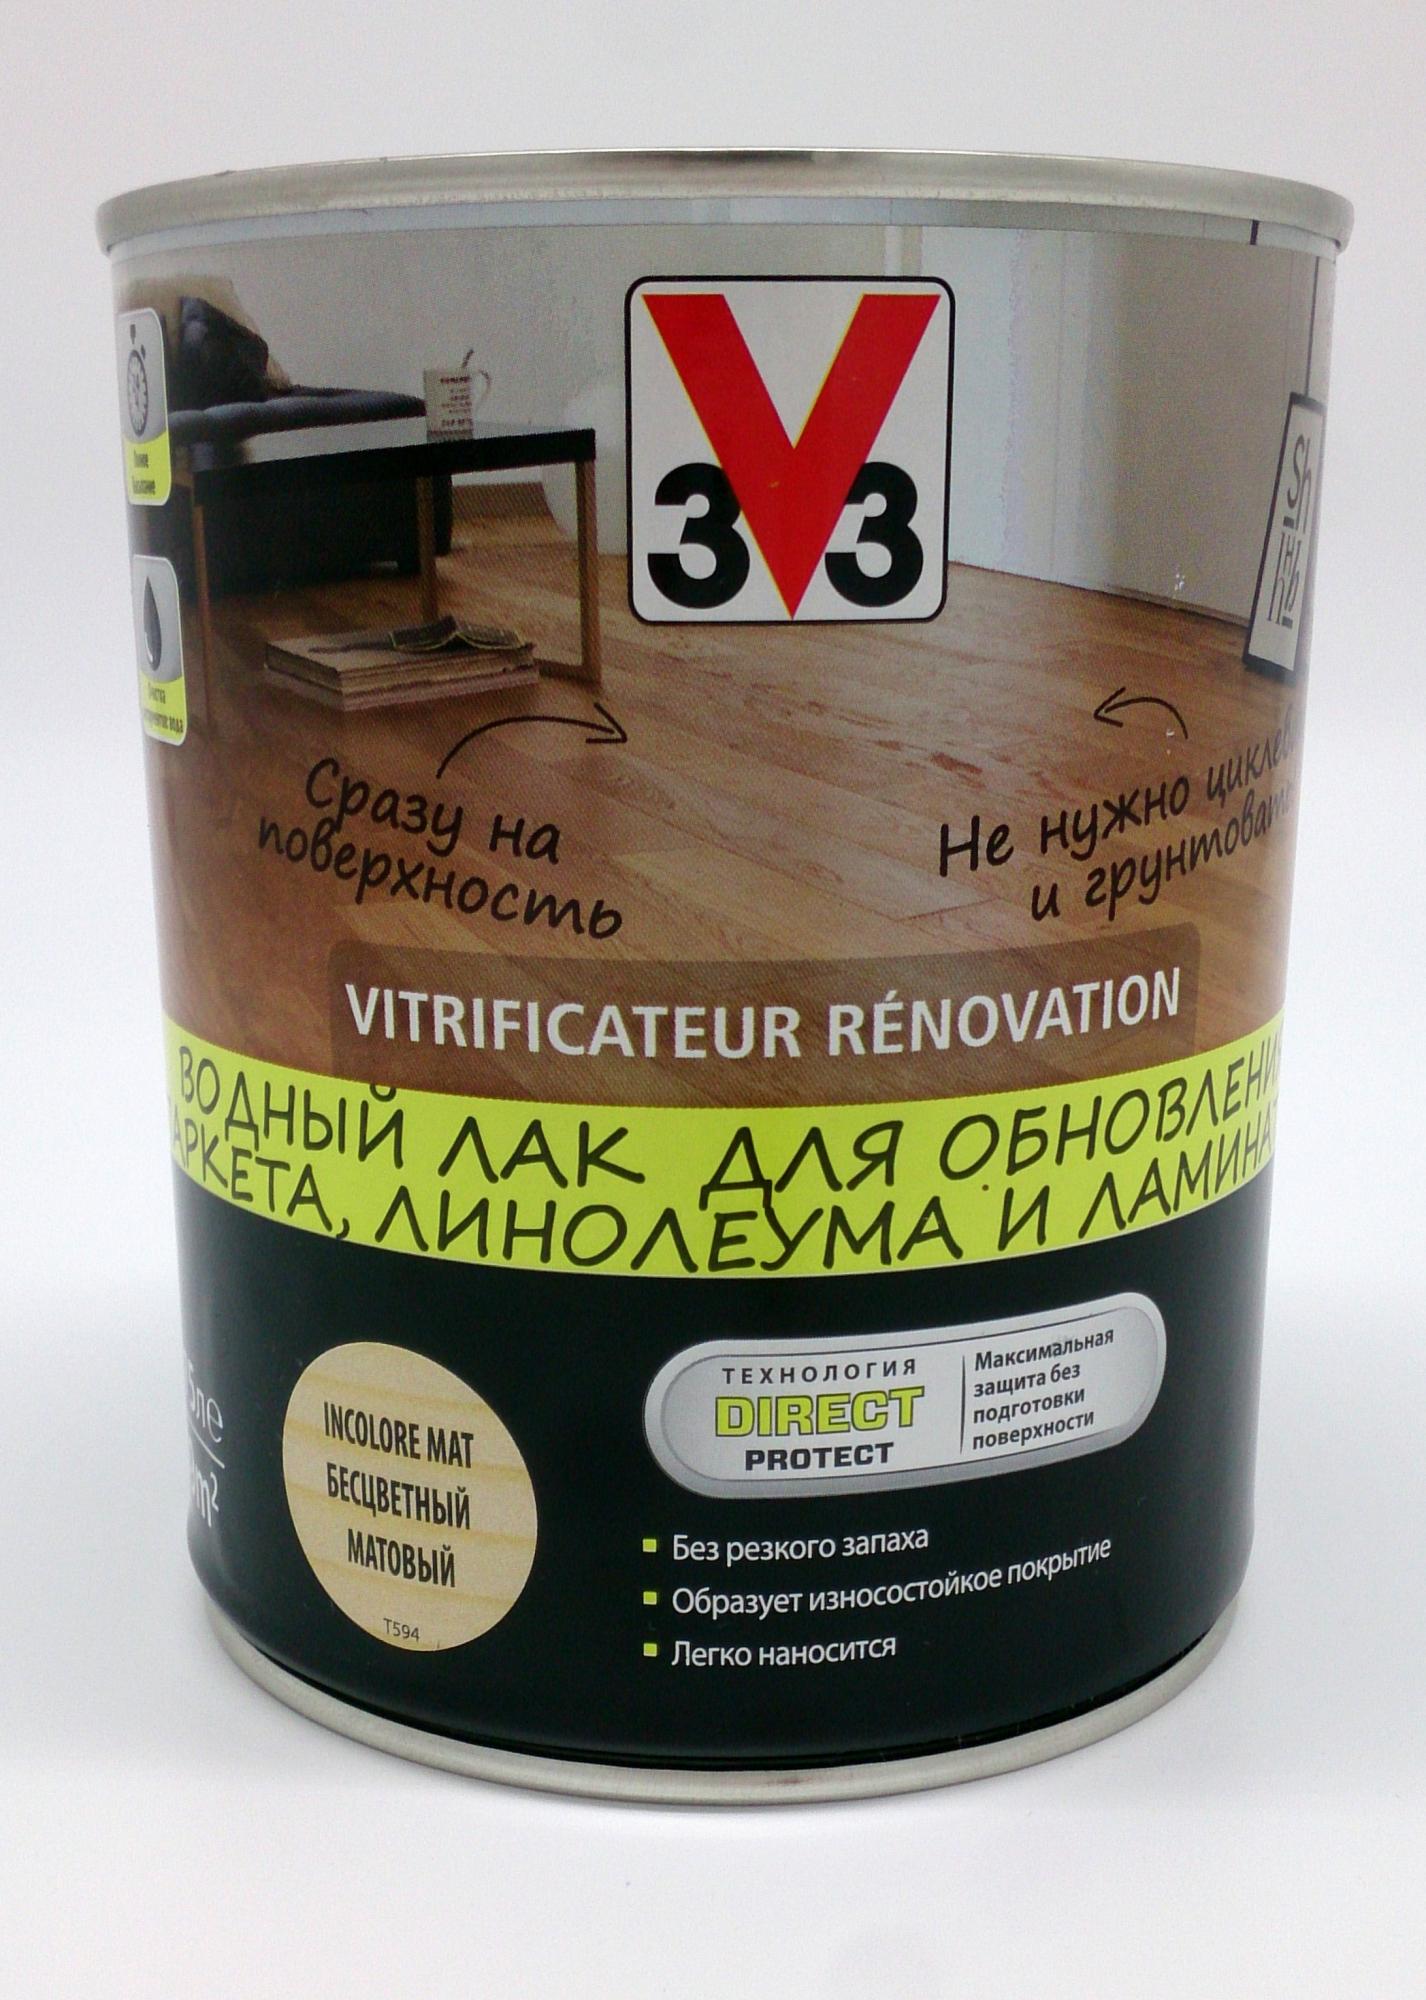 v33 лак для обновления мебели